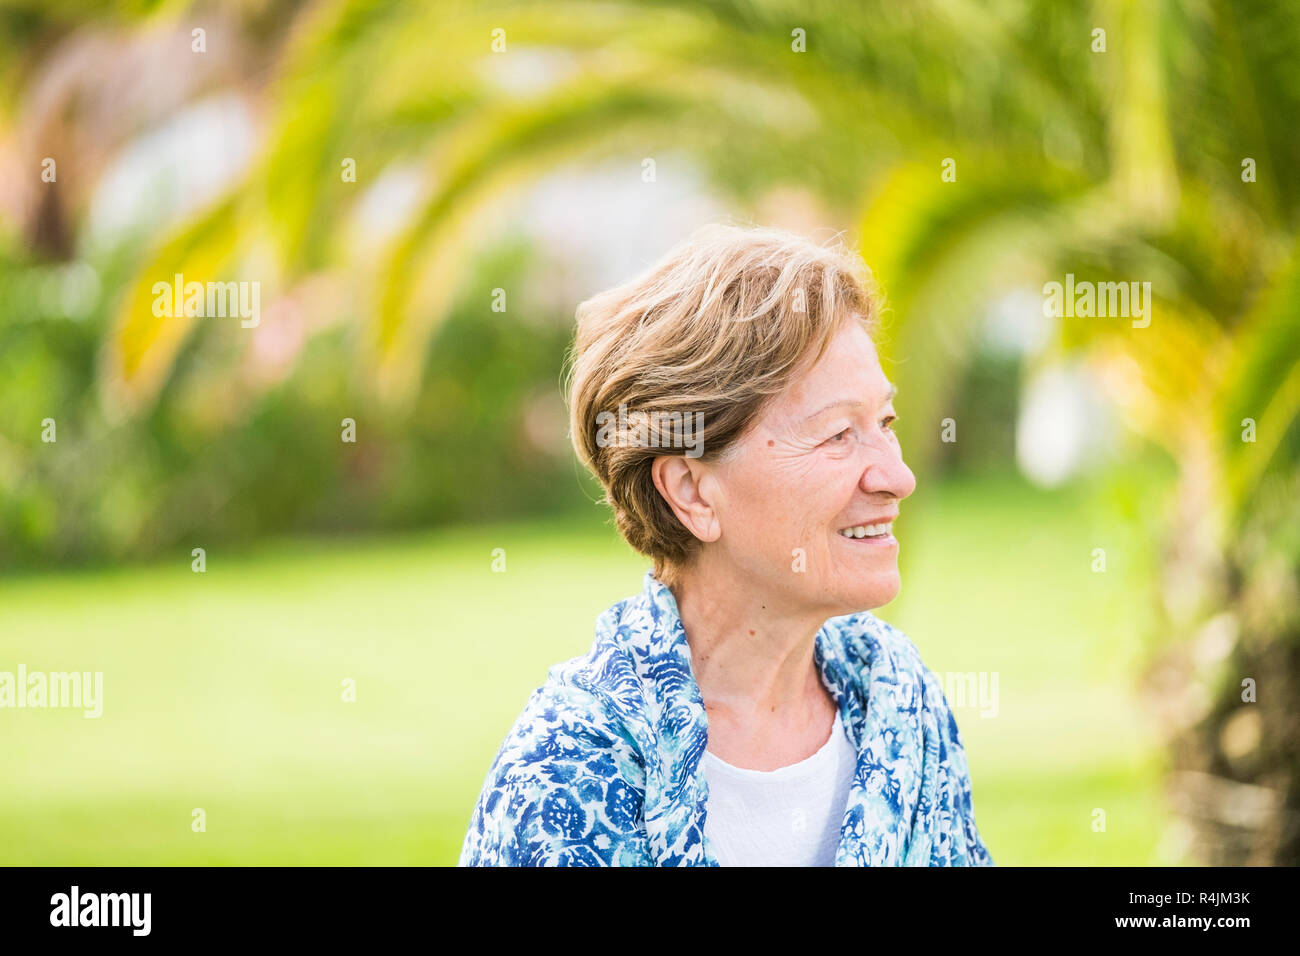 Retrato de 70 años de edad adult senior mujer sonriendo y mirando el exterior con un efecto de desenfoque bokeh de fondo verde - gente jubilada con agradable estilo c Foto de stock